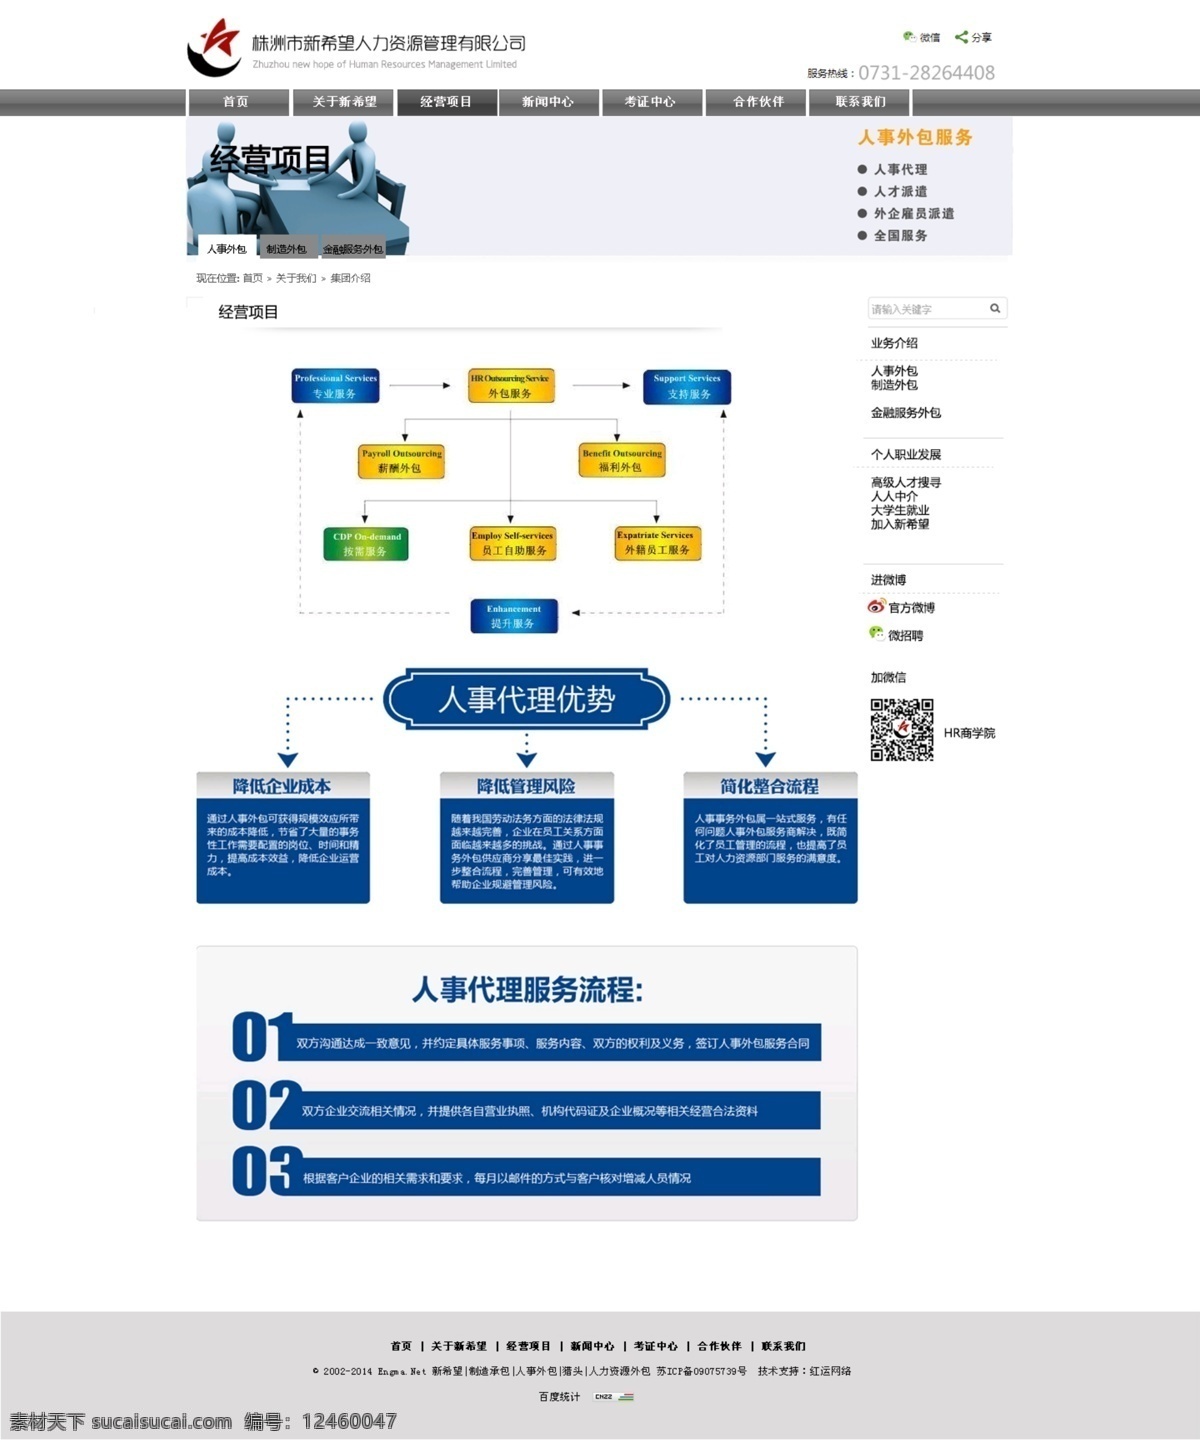 经营项目 内页设计 网页设计 网站内页 网站设计 中文模板 web 界面设计 网页素材 其他网页素材